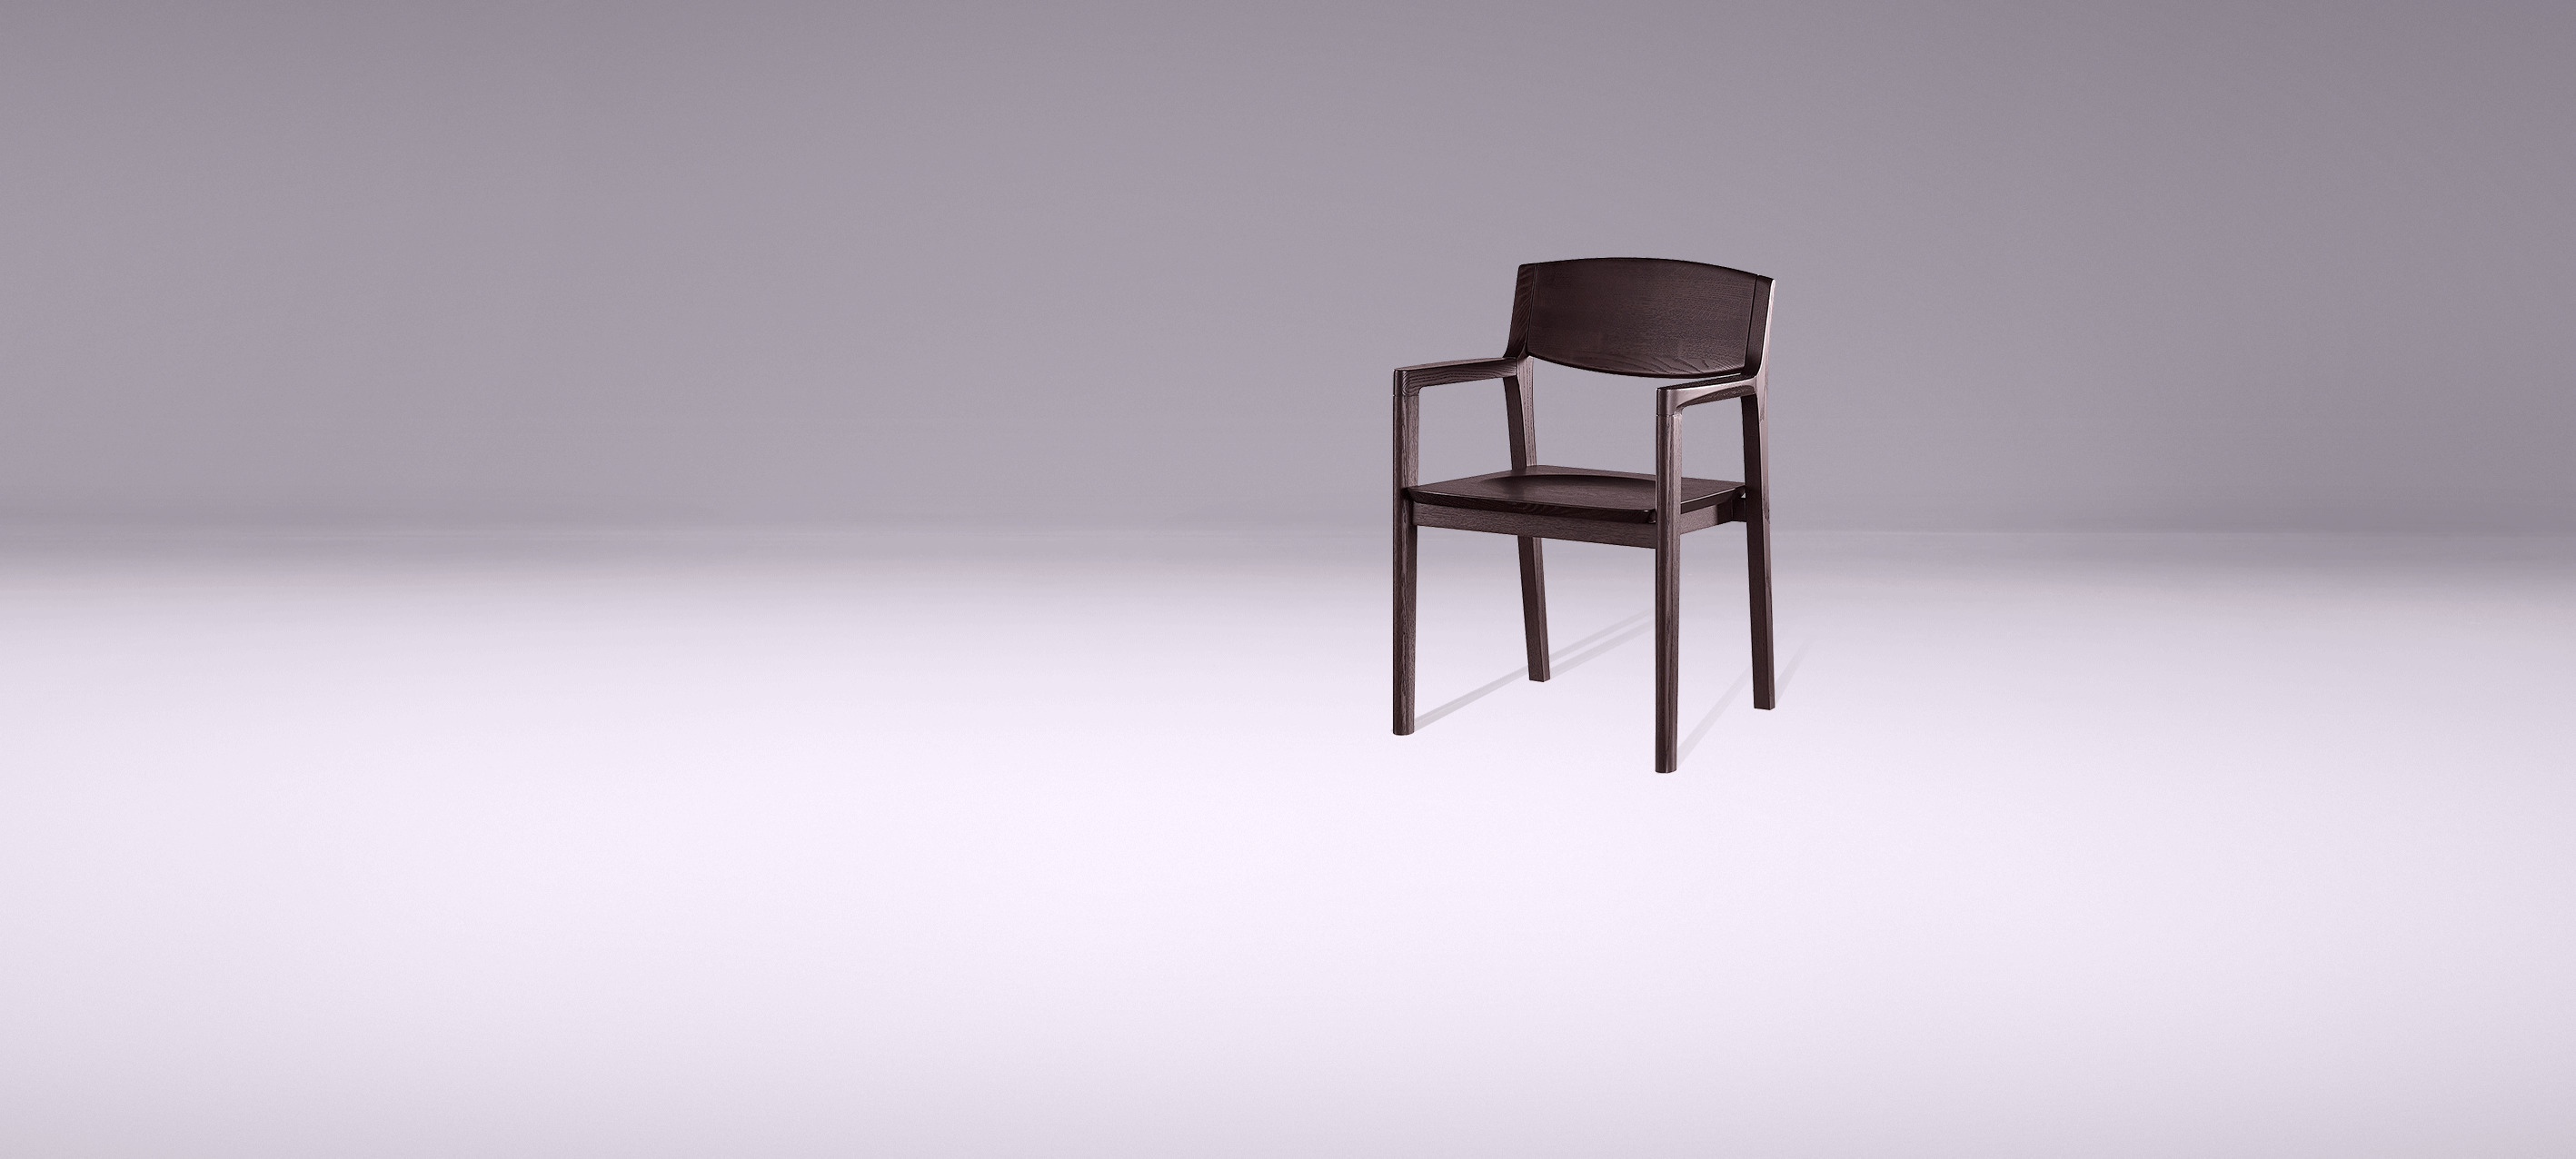 展示一把椅子GIF图片